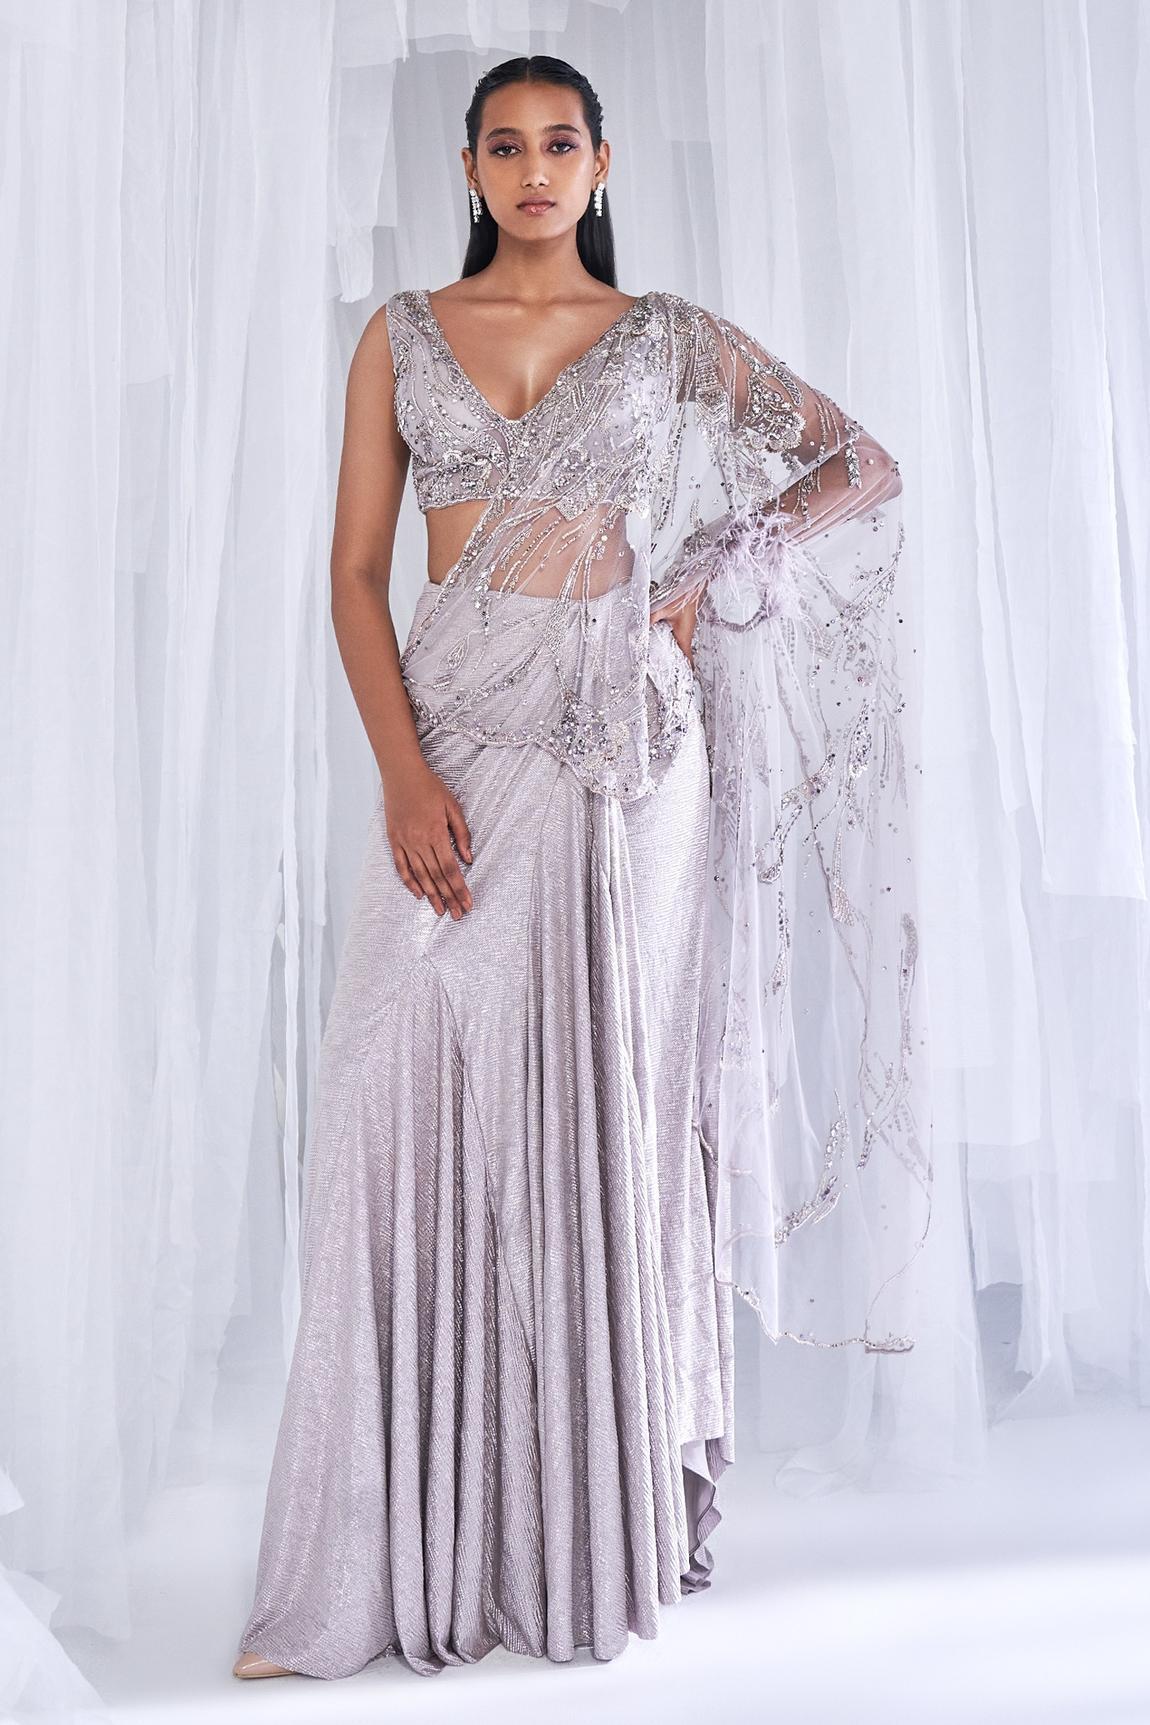 Budget Maxi Dresses: फेस्टिवल के लिए सही रहेंगी 500 रुपये के अंदर मिलने  वाली 20 ट्रेंडी मैक्सी ड्रेसेज | trendy budget maxi dresses for festive  season